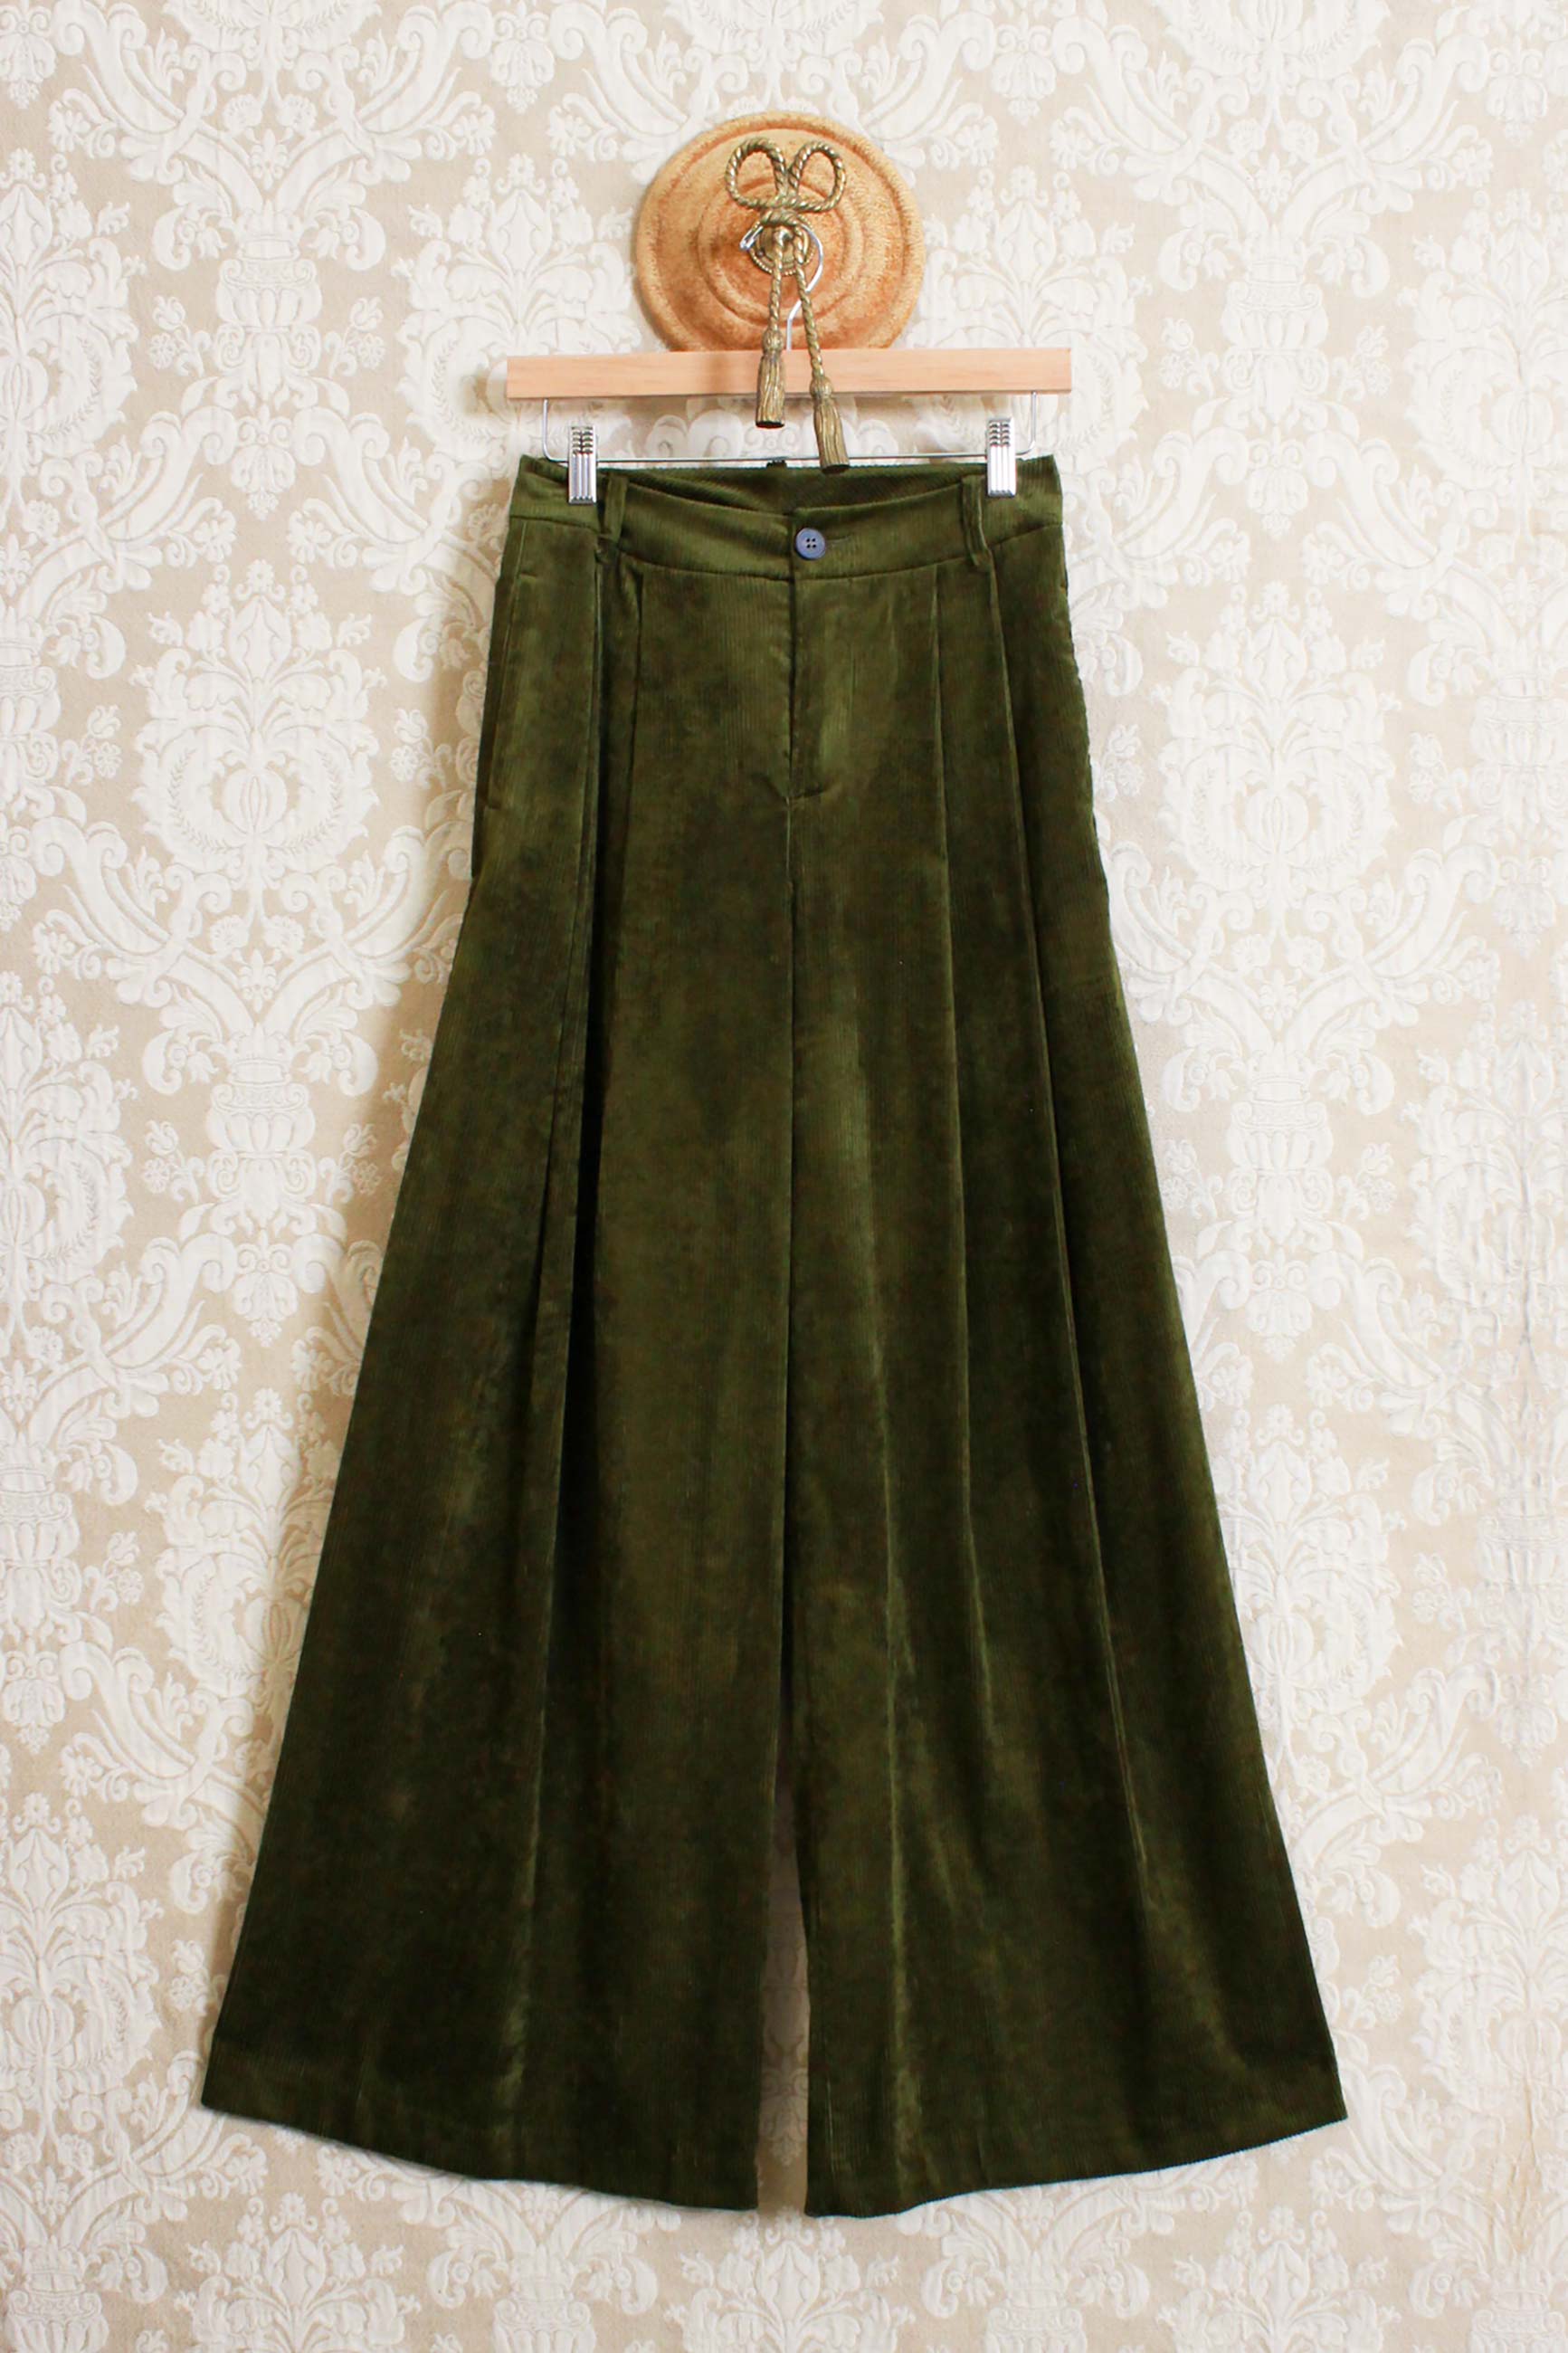 Pantalone a palazzo in velluto color verde oliva della maison Phisique du Role by Erika Cavallin